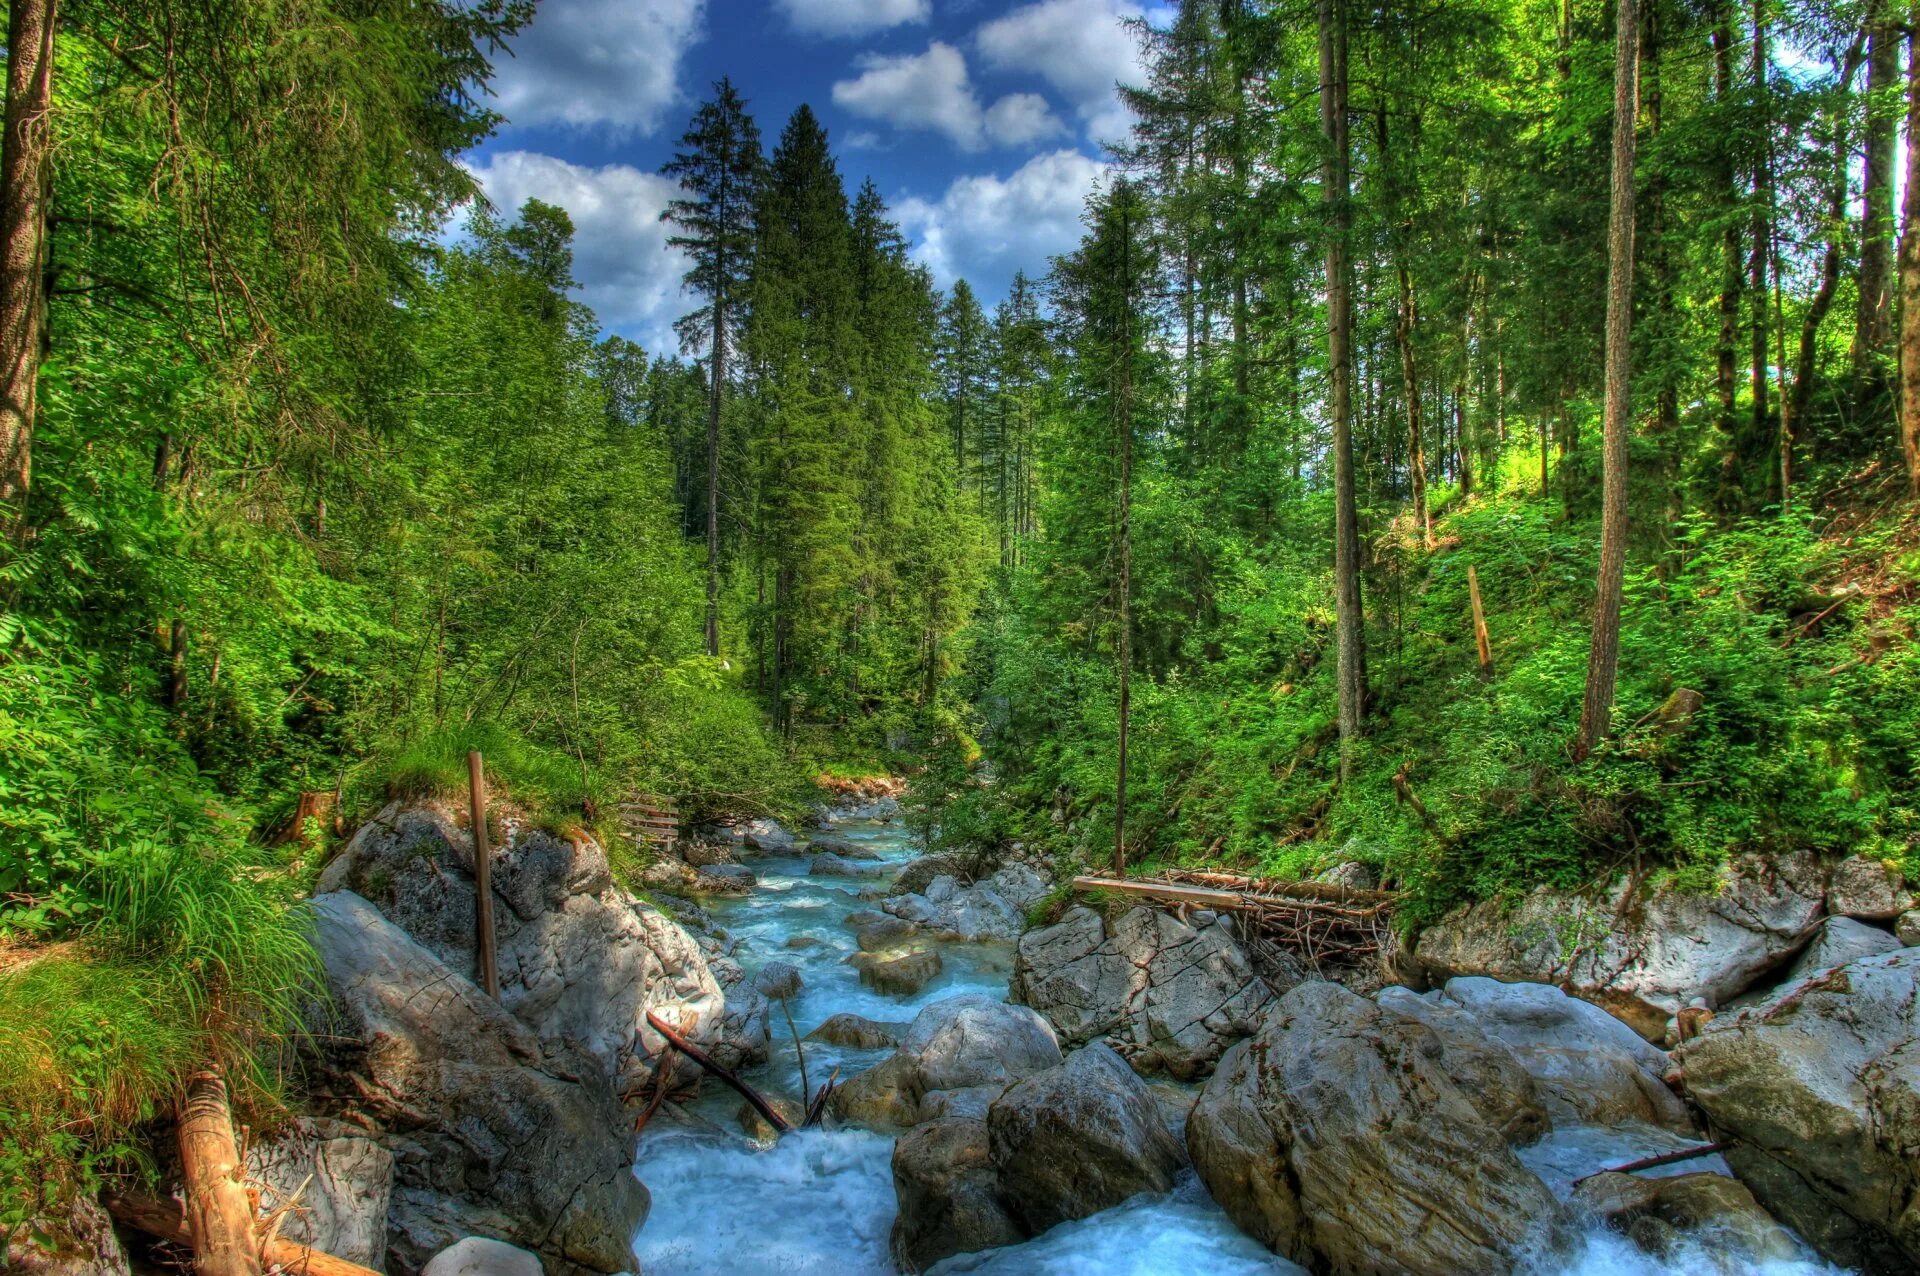 Обои на телефон природа вертикальные высокого качества. Природа ручей лес Россия. Хвойный лес река камни. Красивый лес. Пейзаж лес.